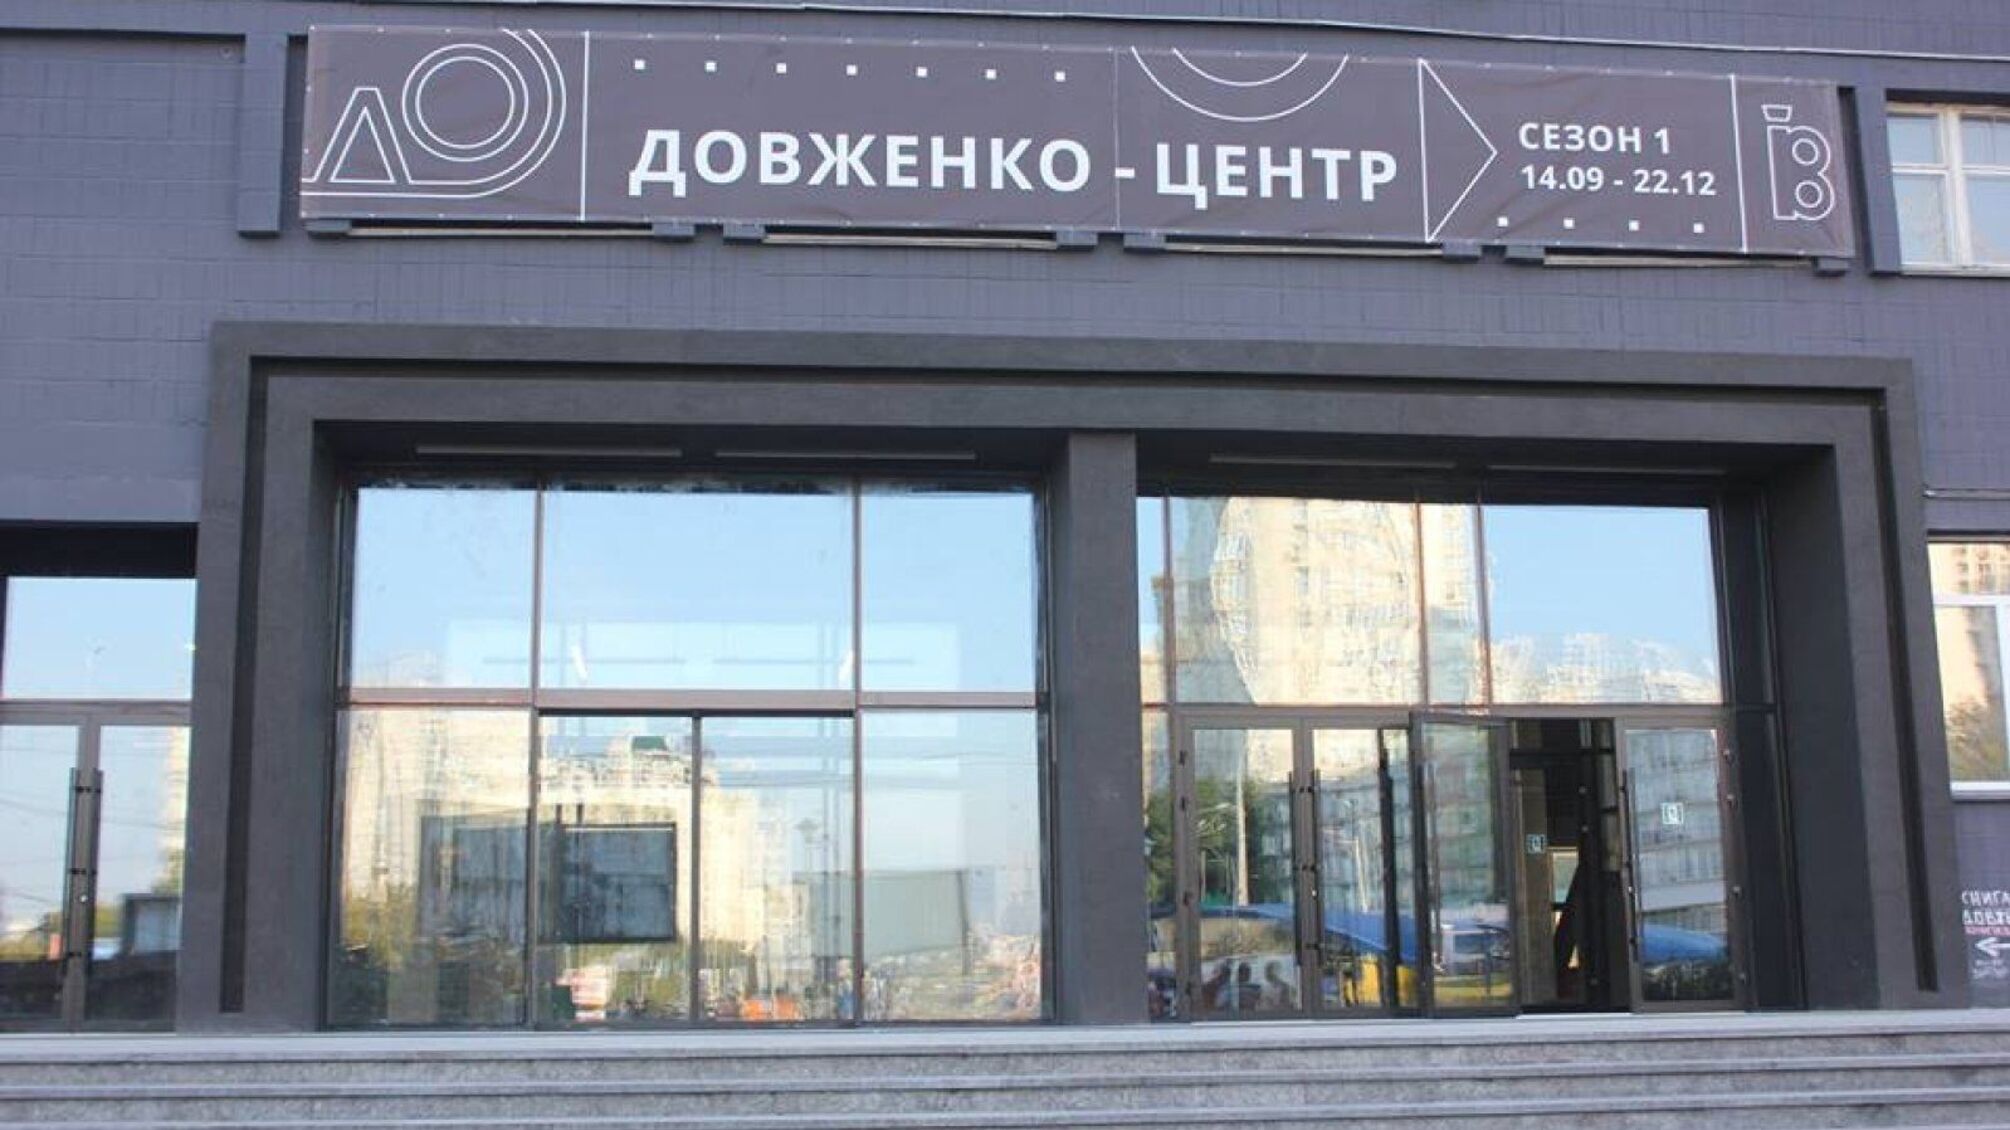 У київському Довженко-Центрі заявляють про рейдерське захоплення: подробиці